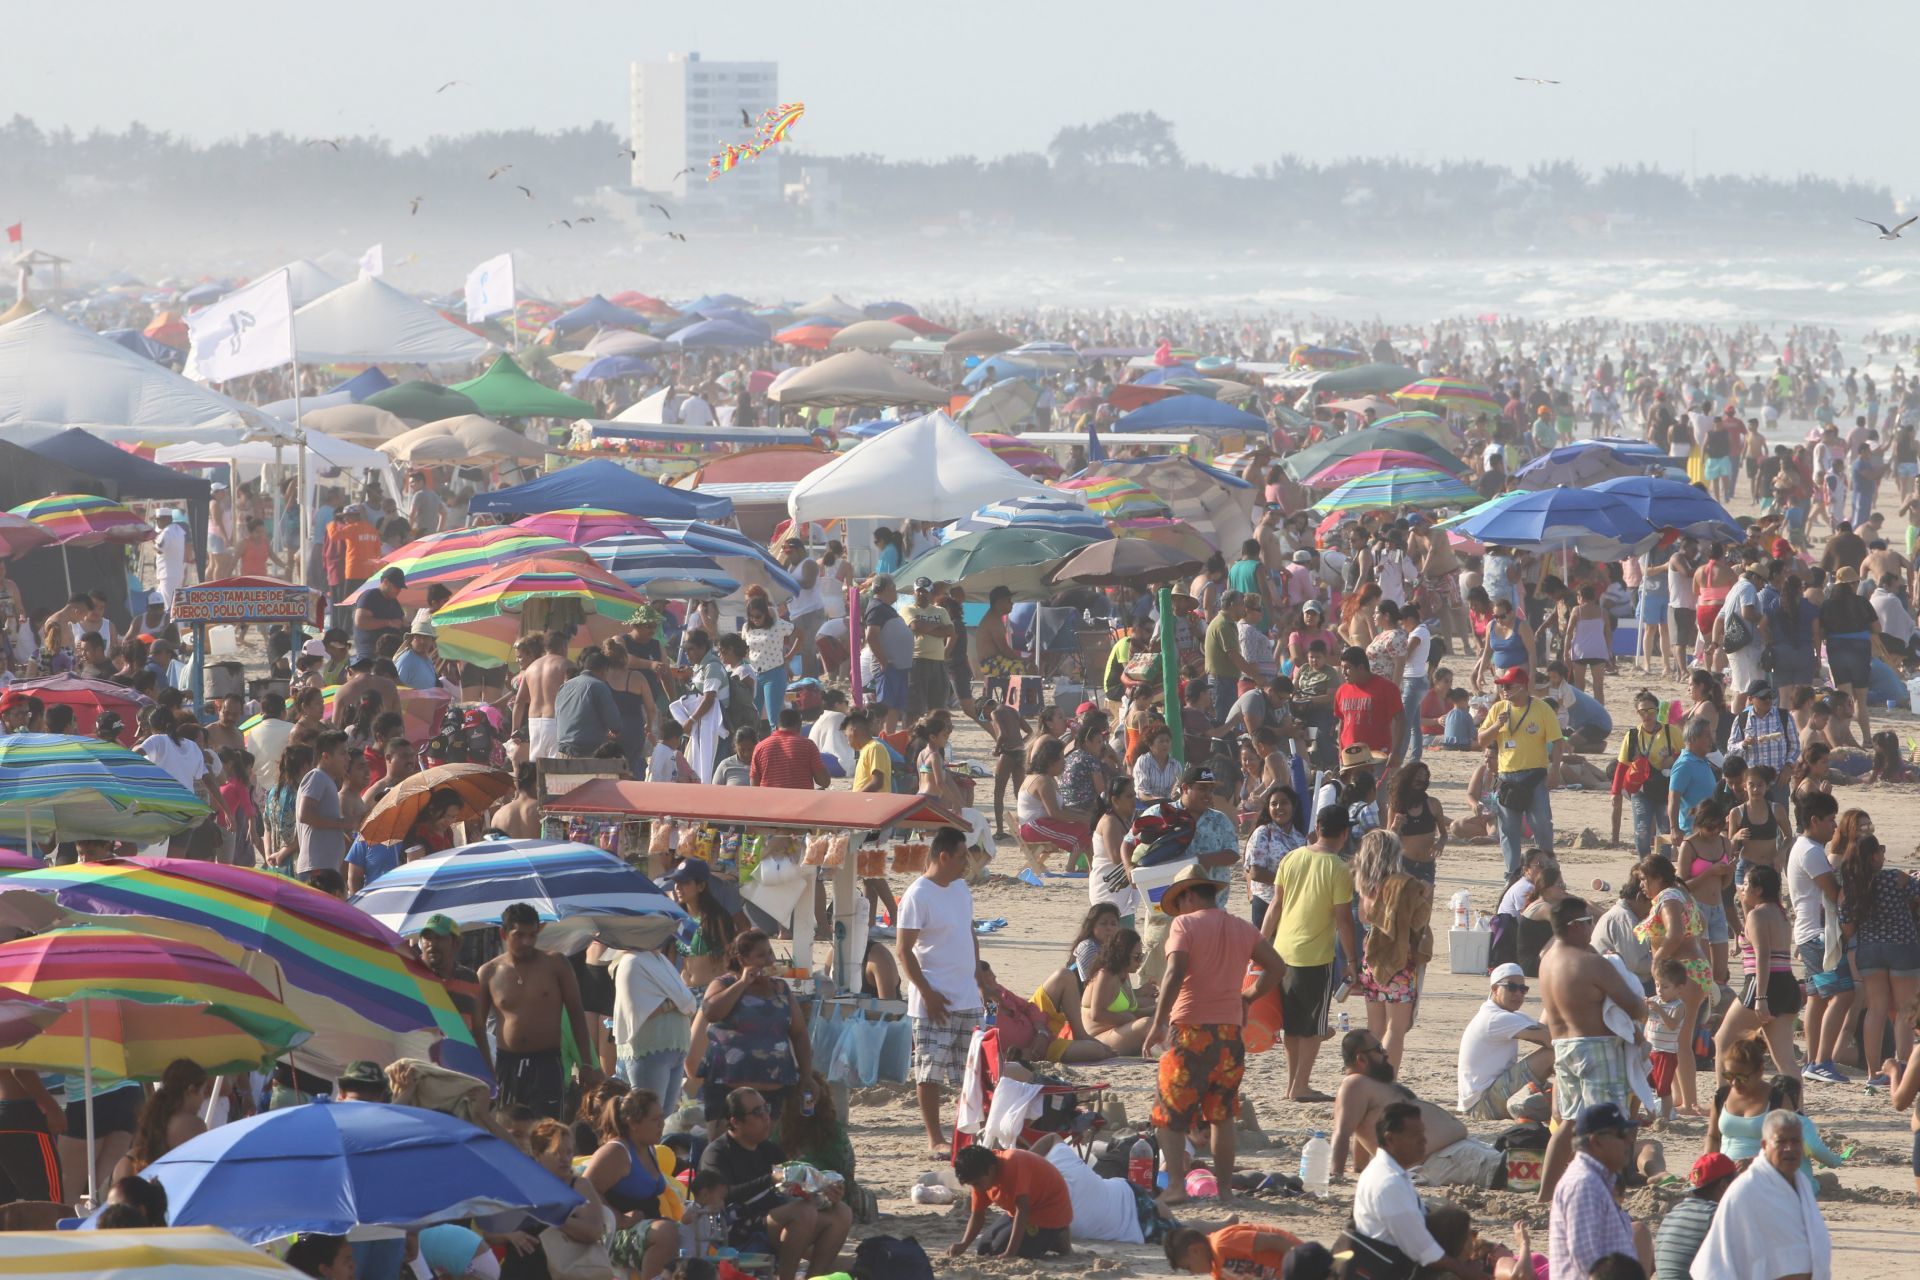 Restricciones a turistas en playa Miramar en Semana Santa